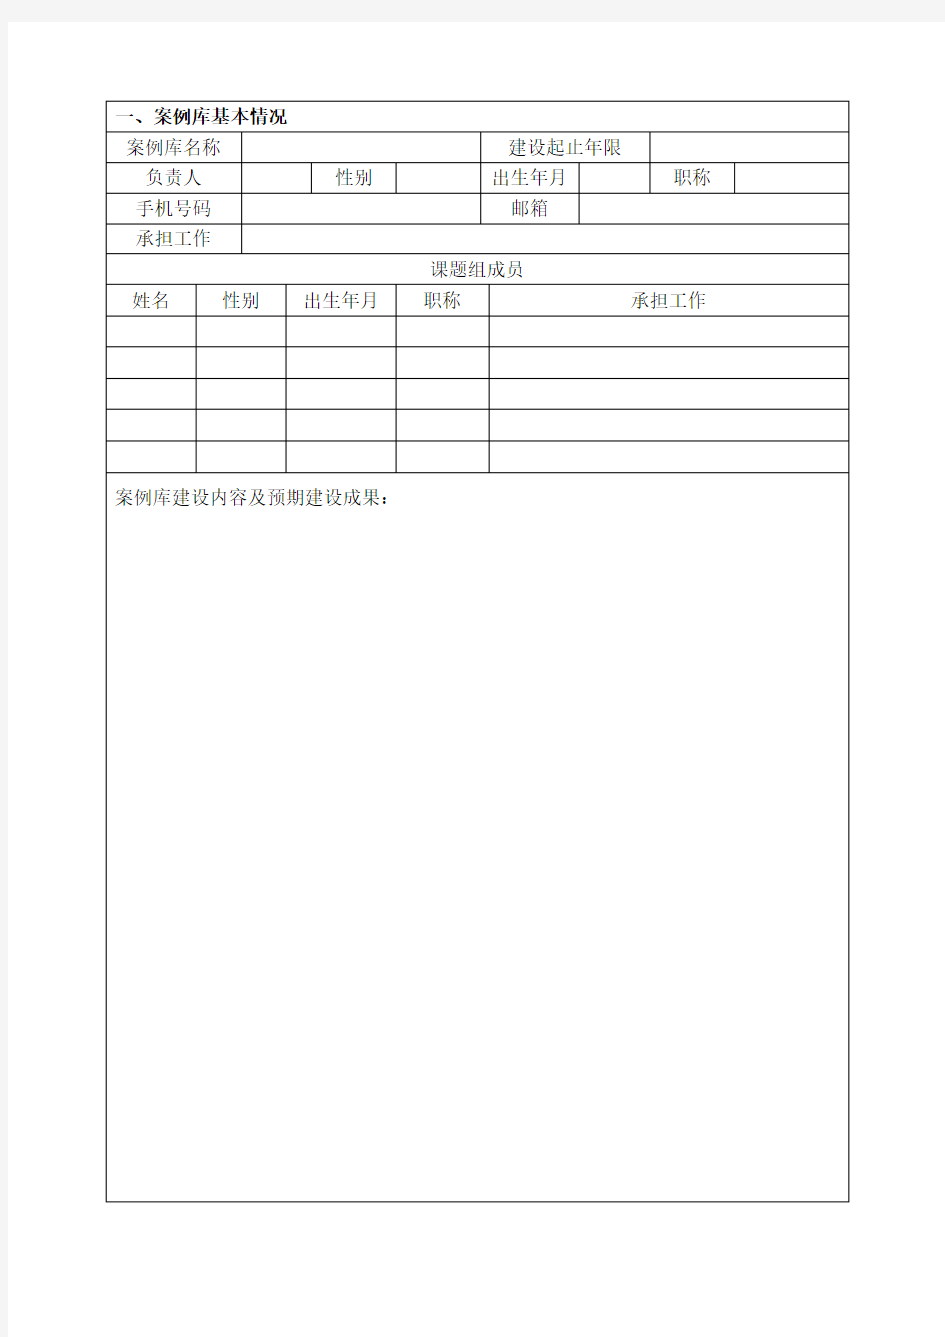 中国计量大学研究生课程案例库结题验收表